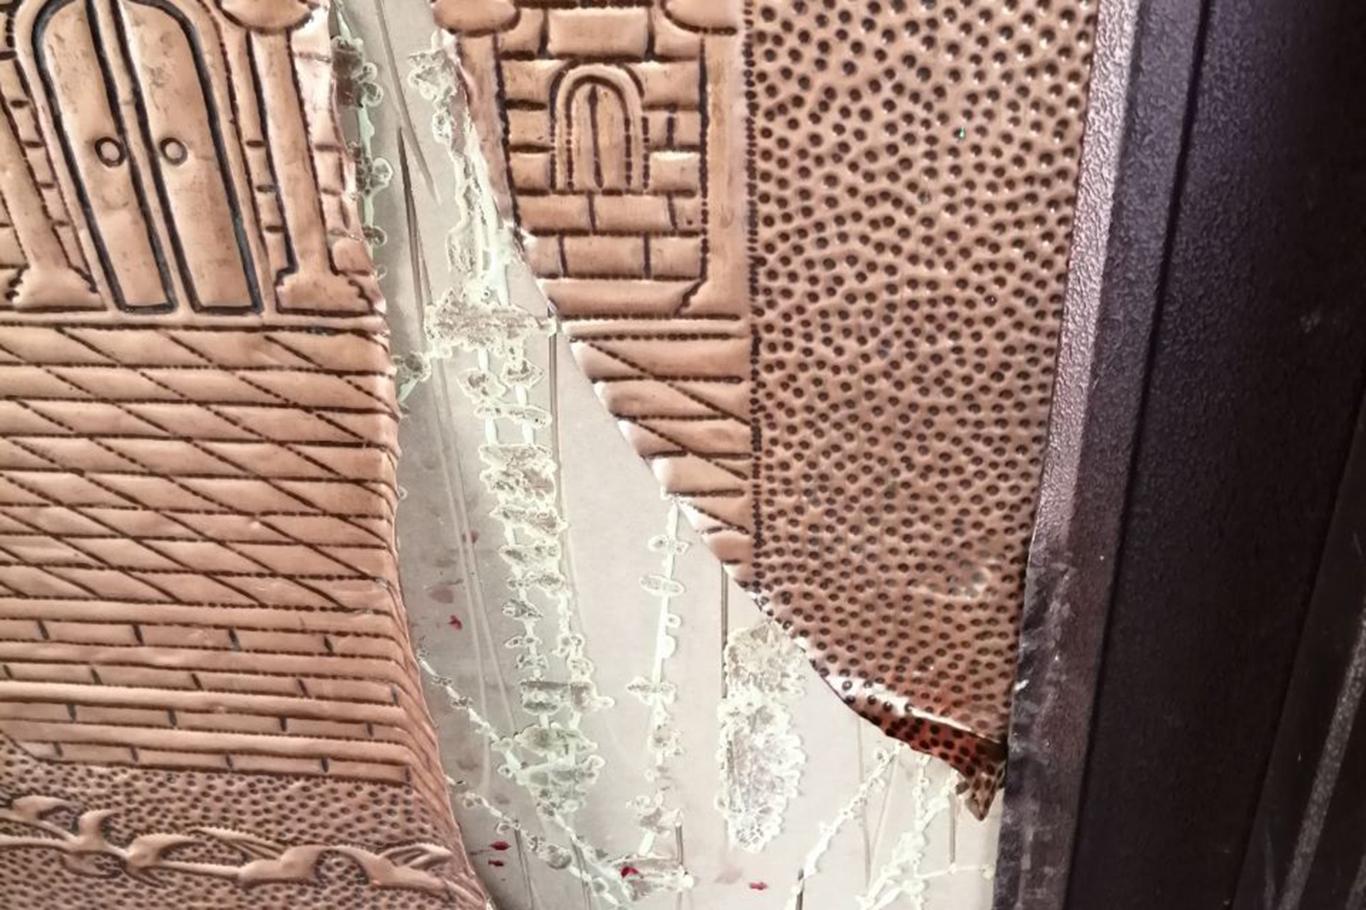 Gaziantep’te cami kapısındaki bakırı çalan şüpheli tutuklandı